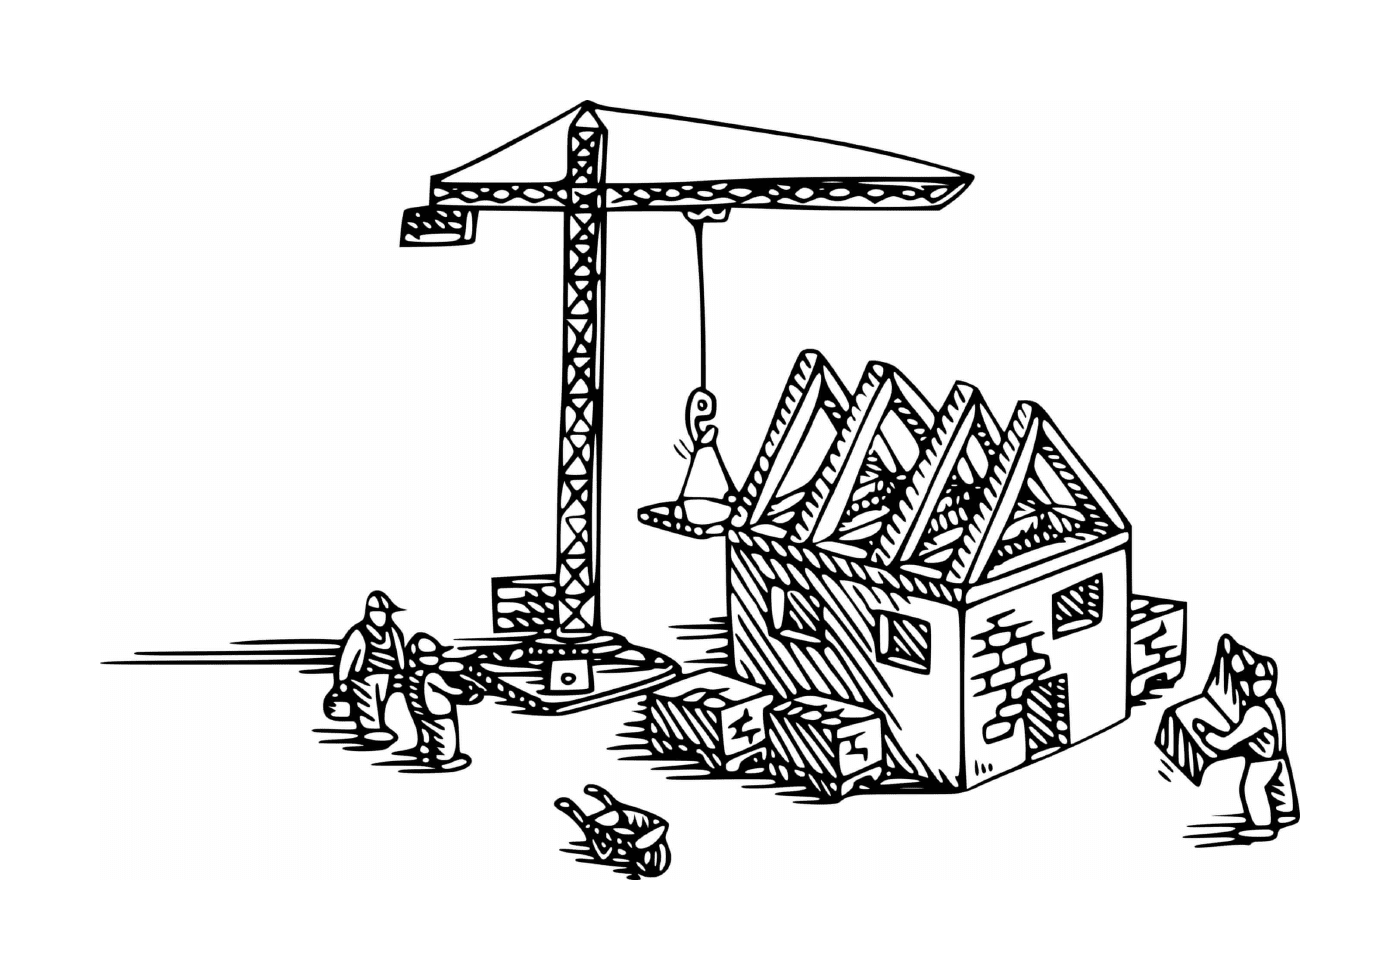  Grúa de construcción utilizada para construir una casa 